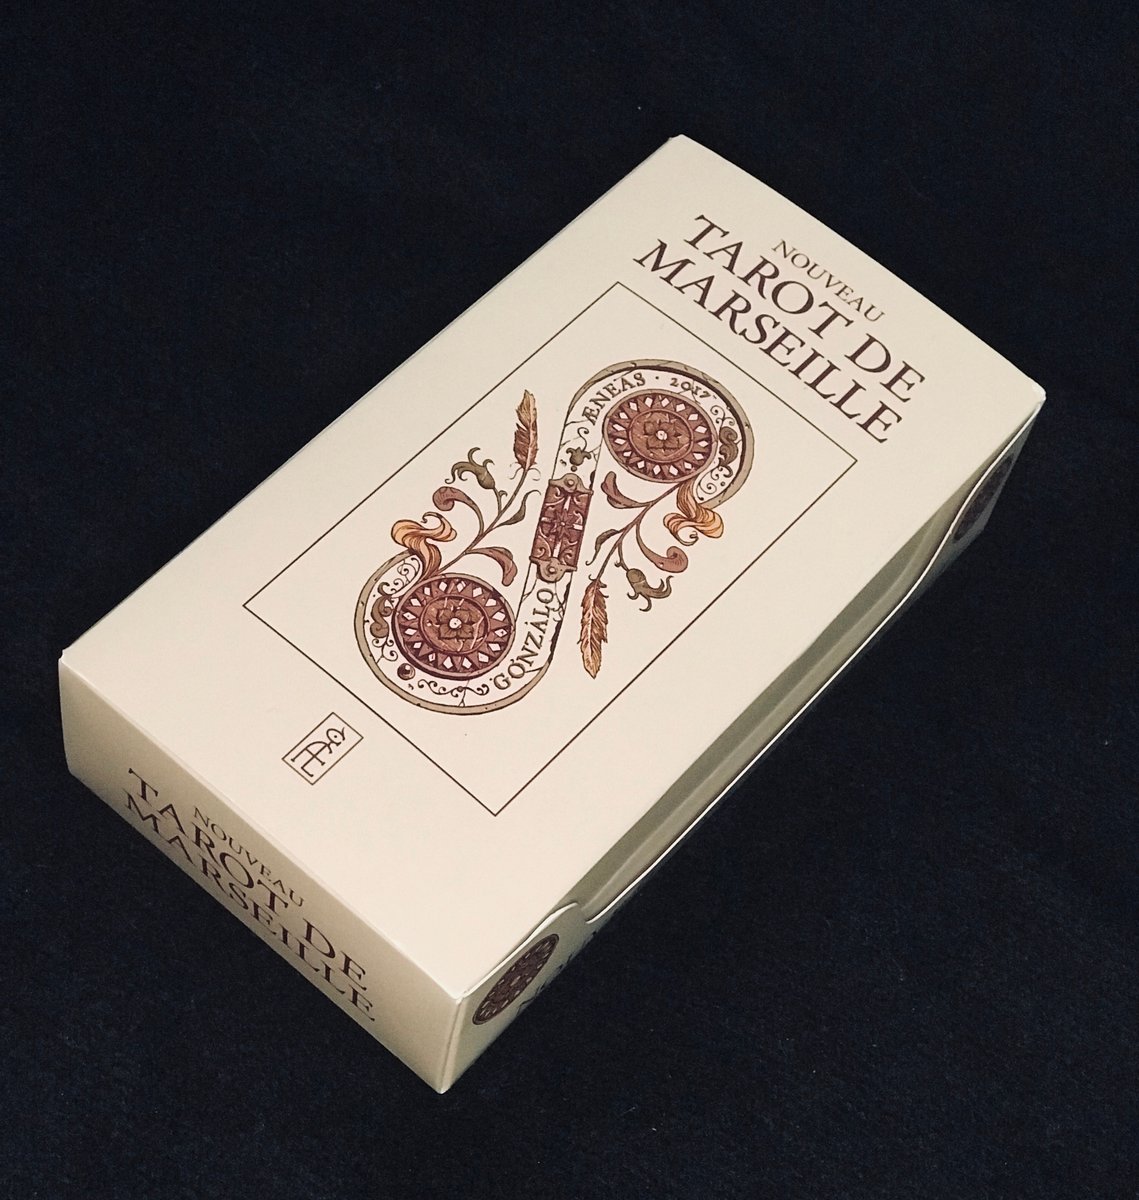 NOUVEAU TAROT DE MARSEILLE' 5th Edition / Gonzalo Æneas